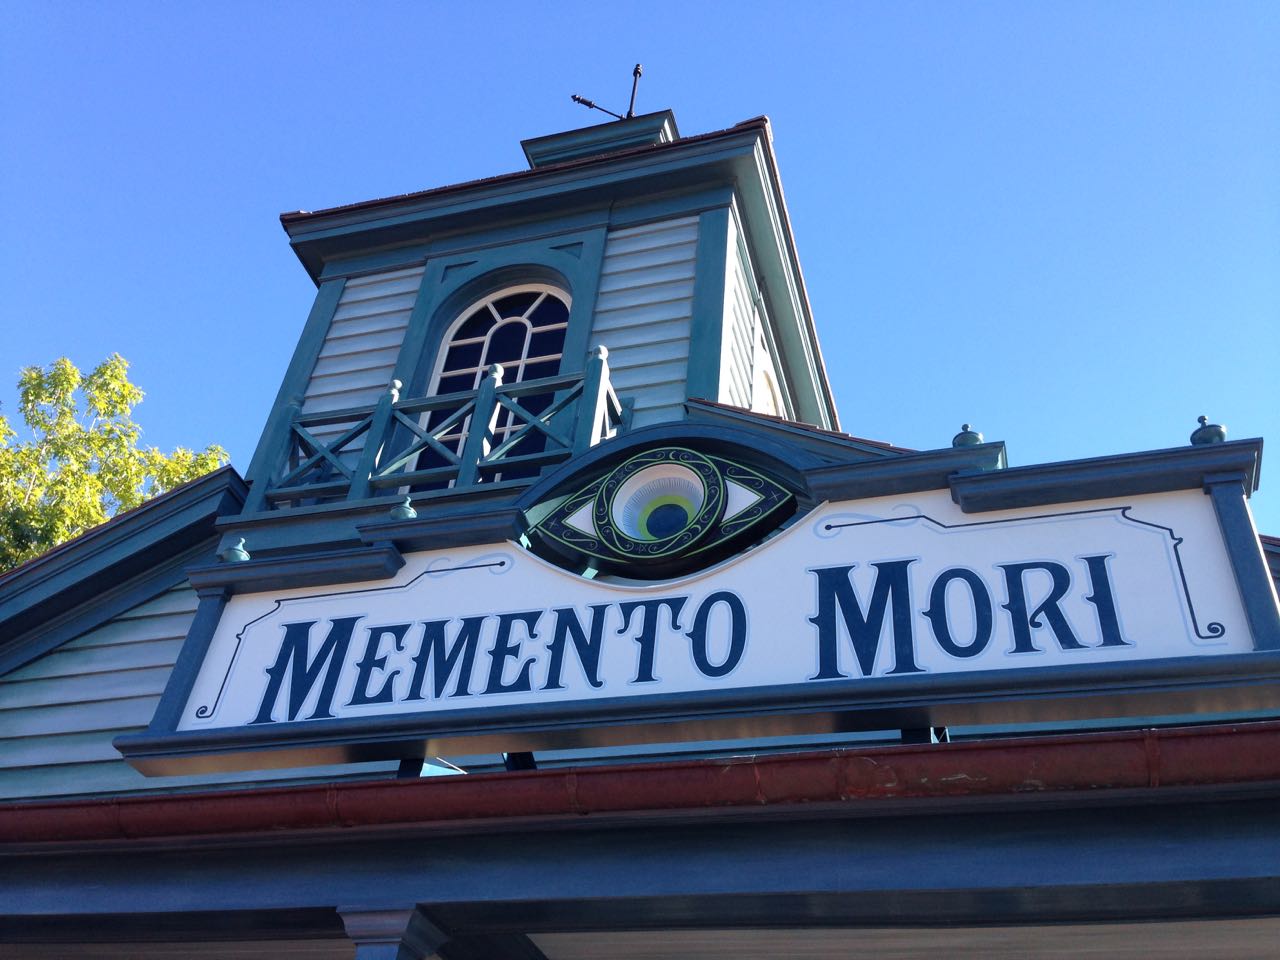 The Magic Kingdom’s Memento Mori